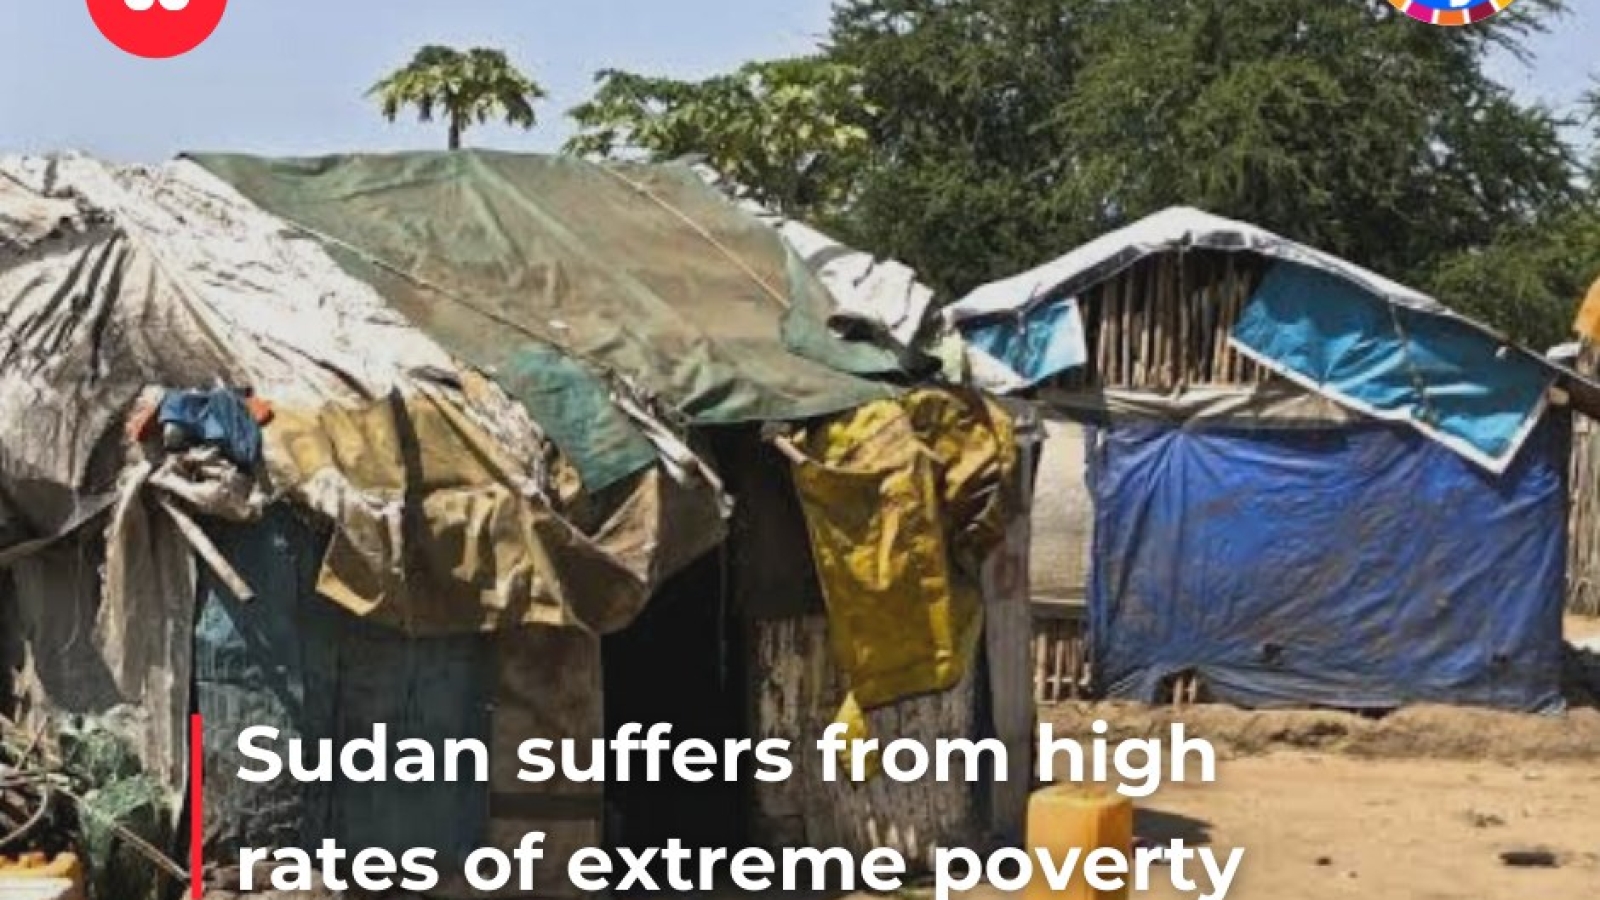 Le Soudan souffre de taux élevés d’extrême pauvreté